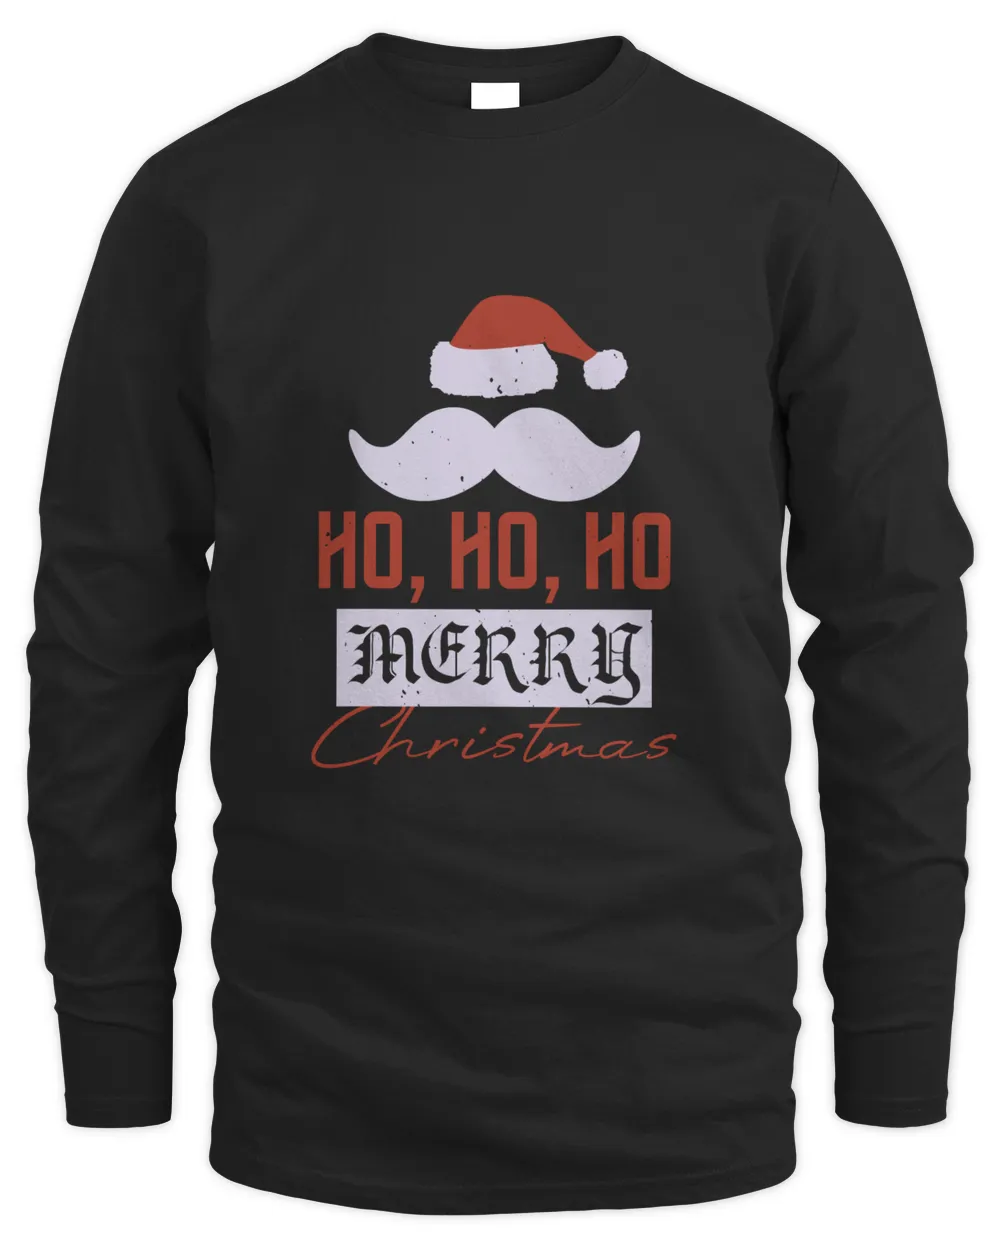 Ho, ho, ho,  Merry Christmas-01